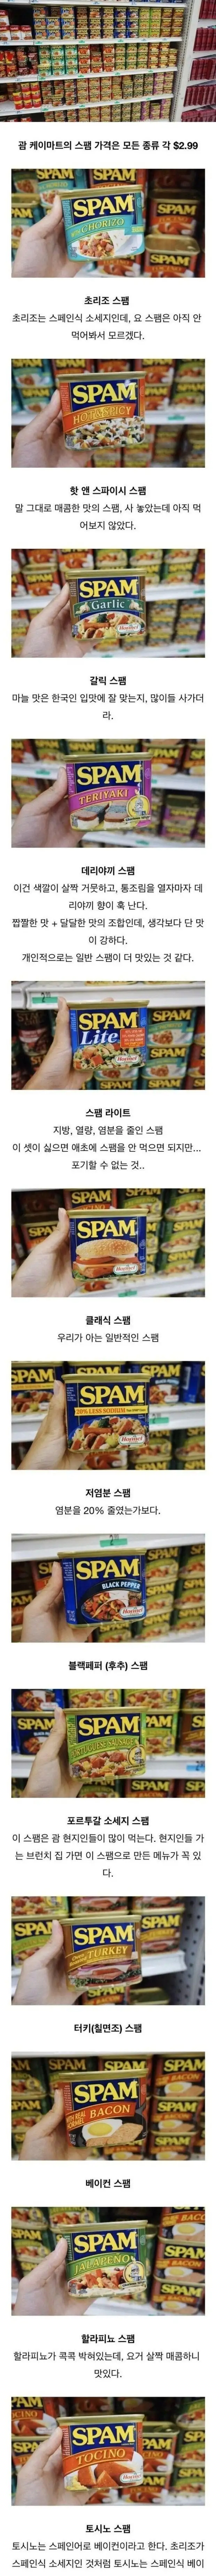 nokbeon.net-한국인은 잘 모르는 스팸 종류-1번 이미지